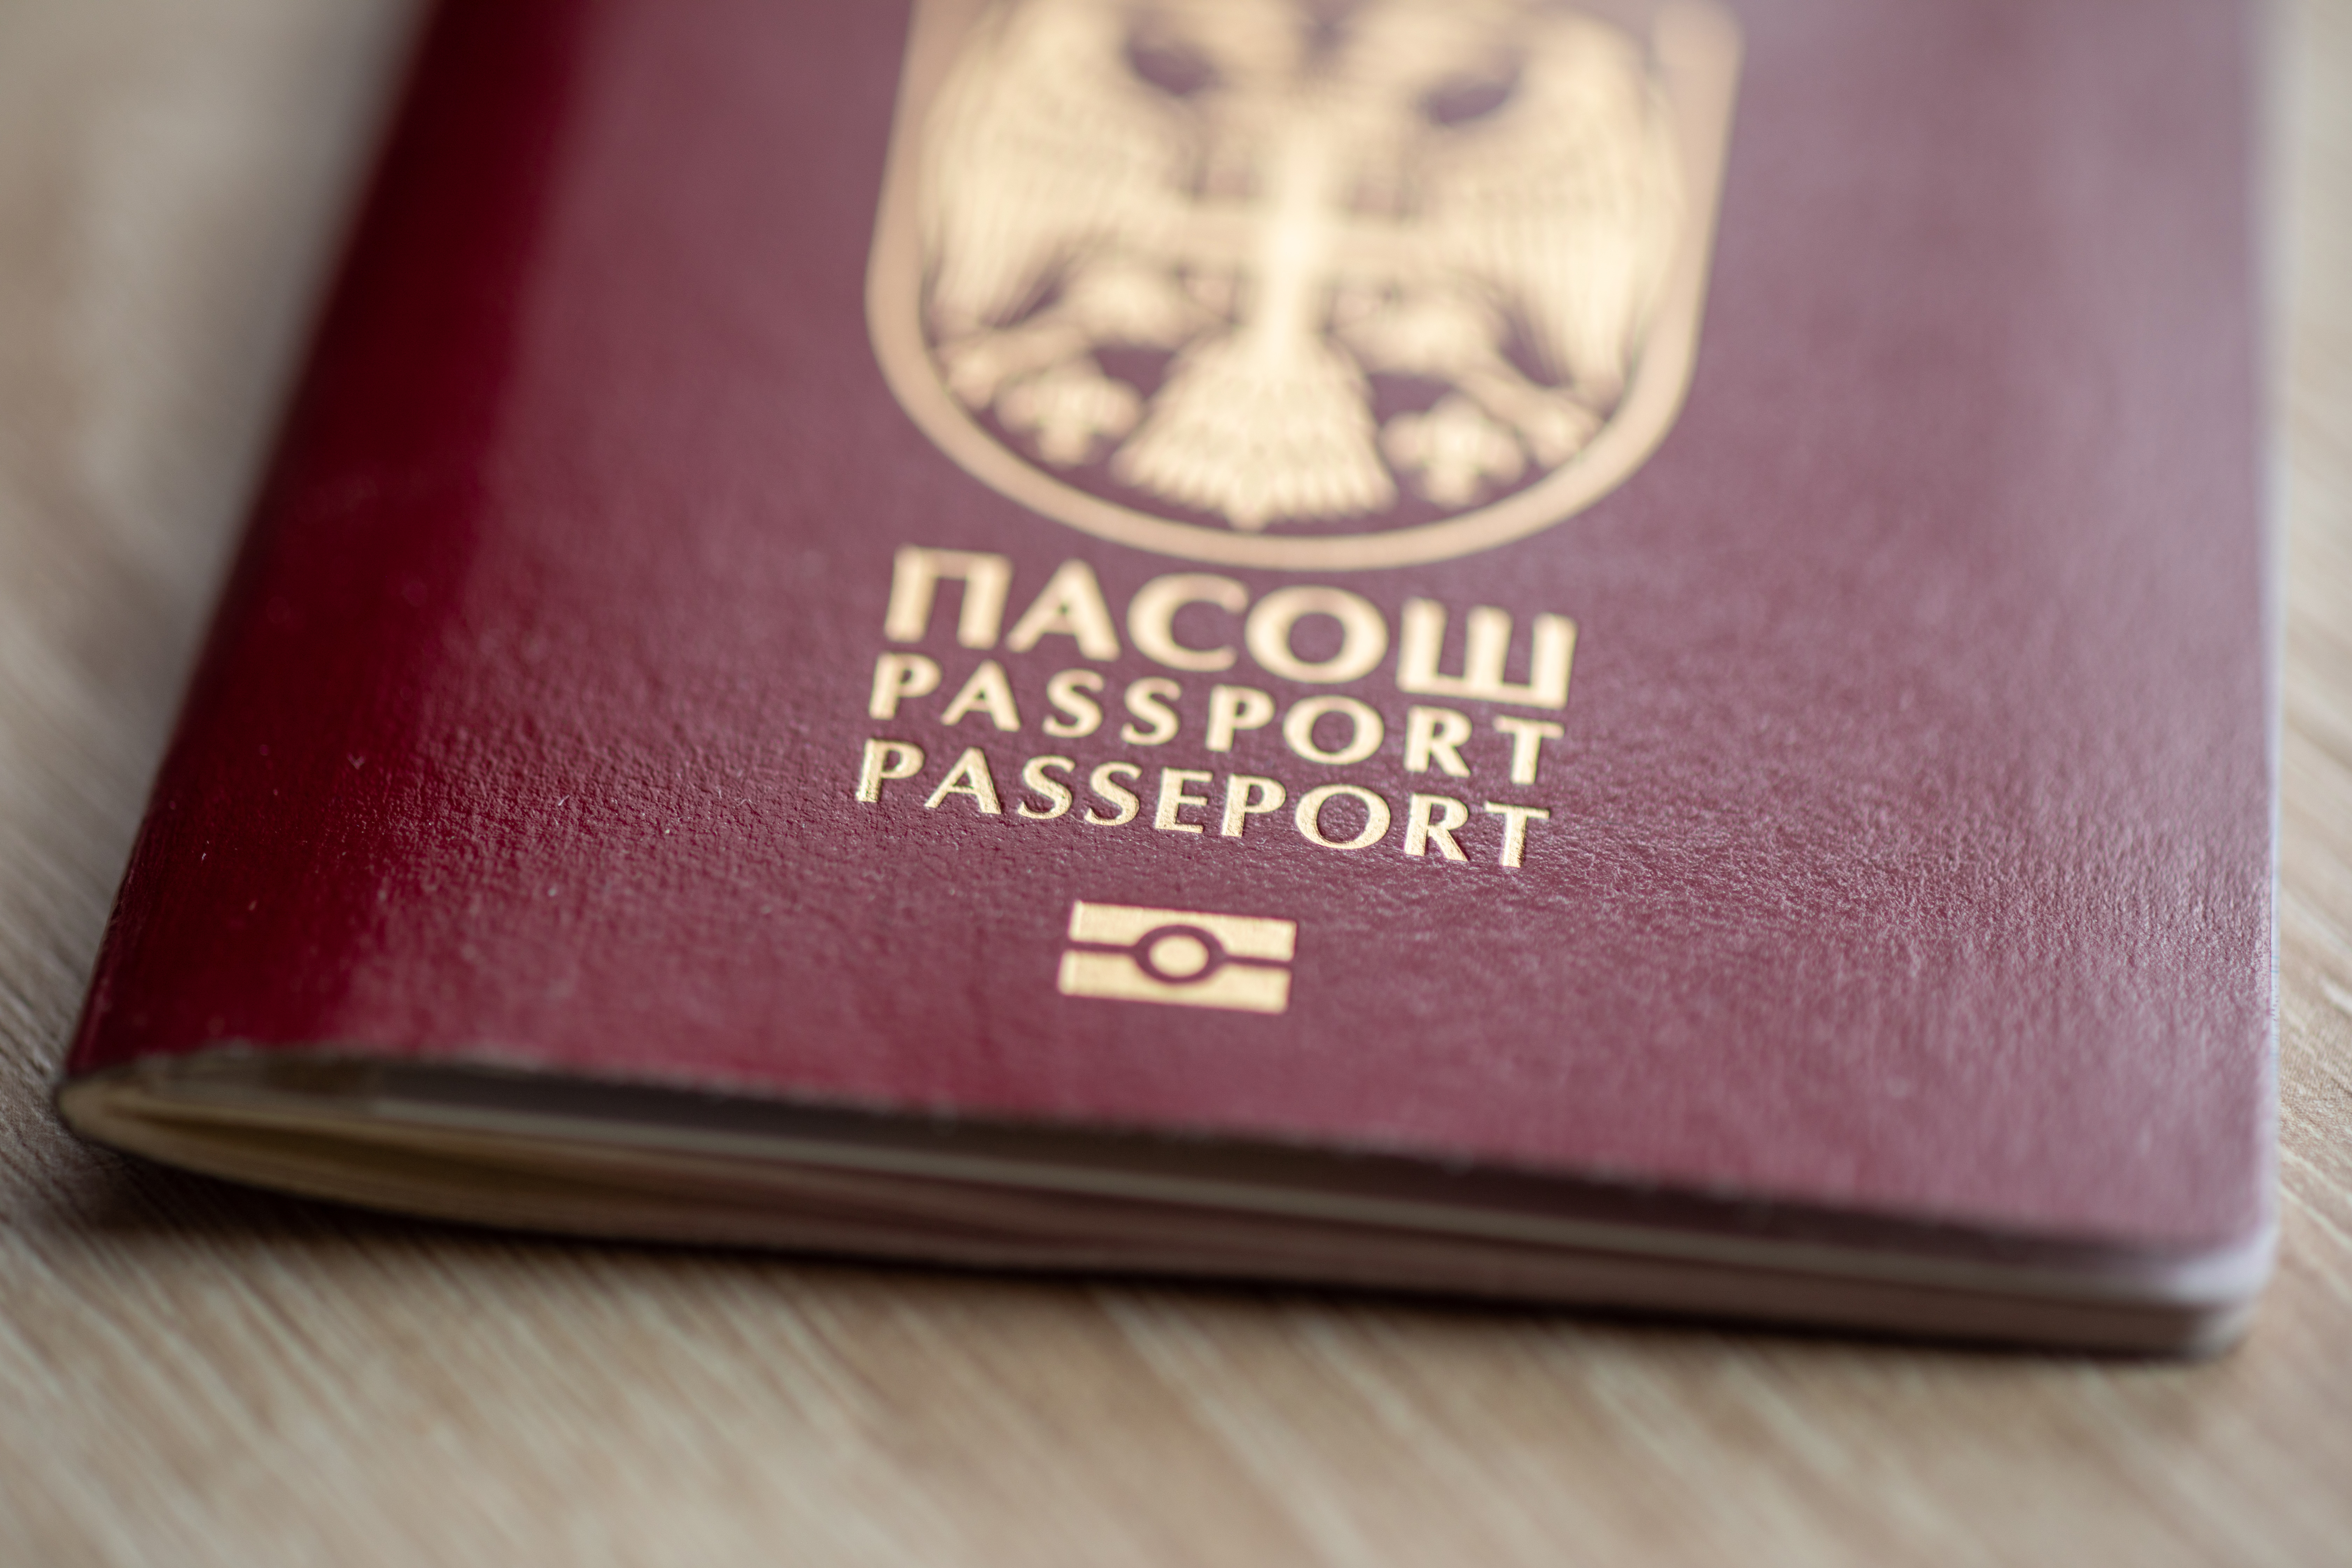 Паспорт Сербии